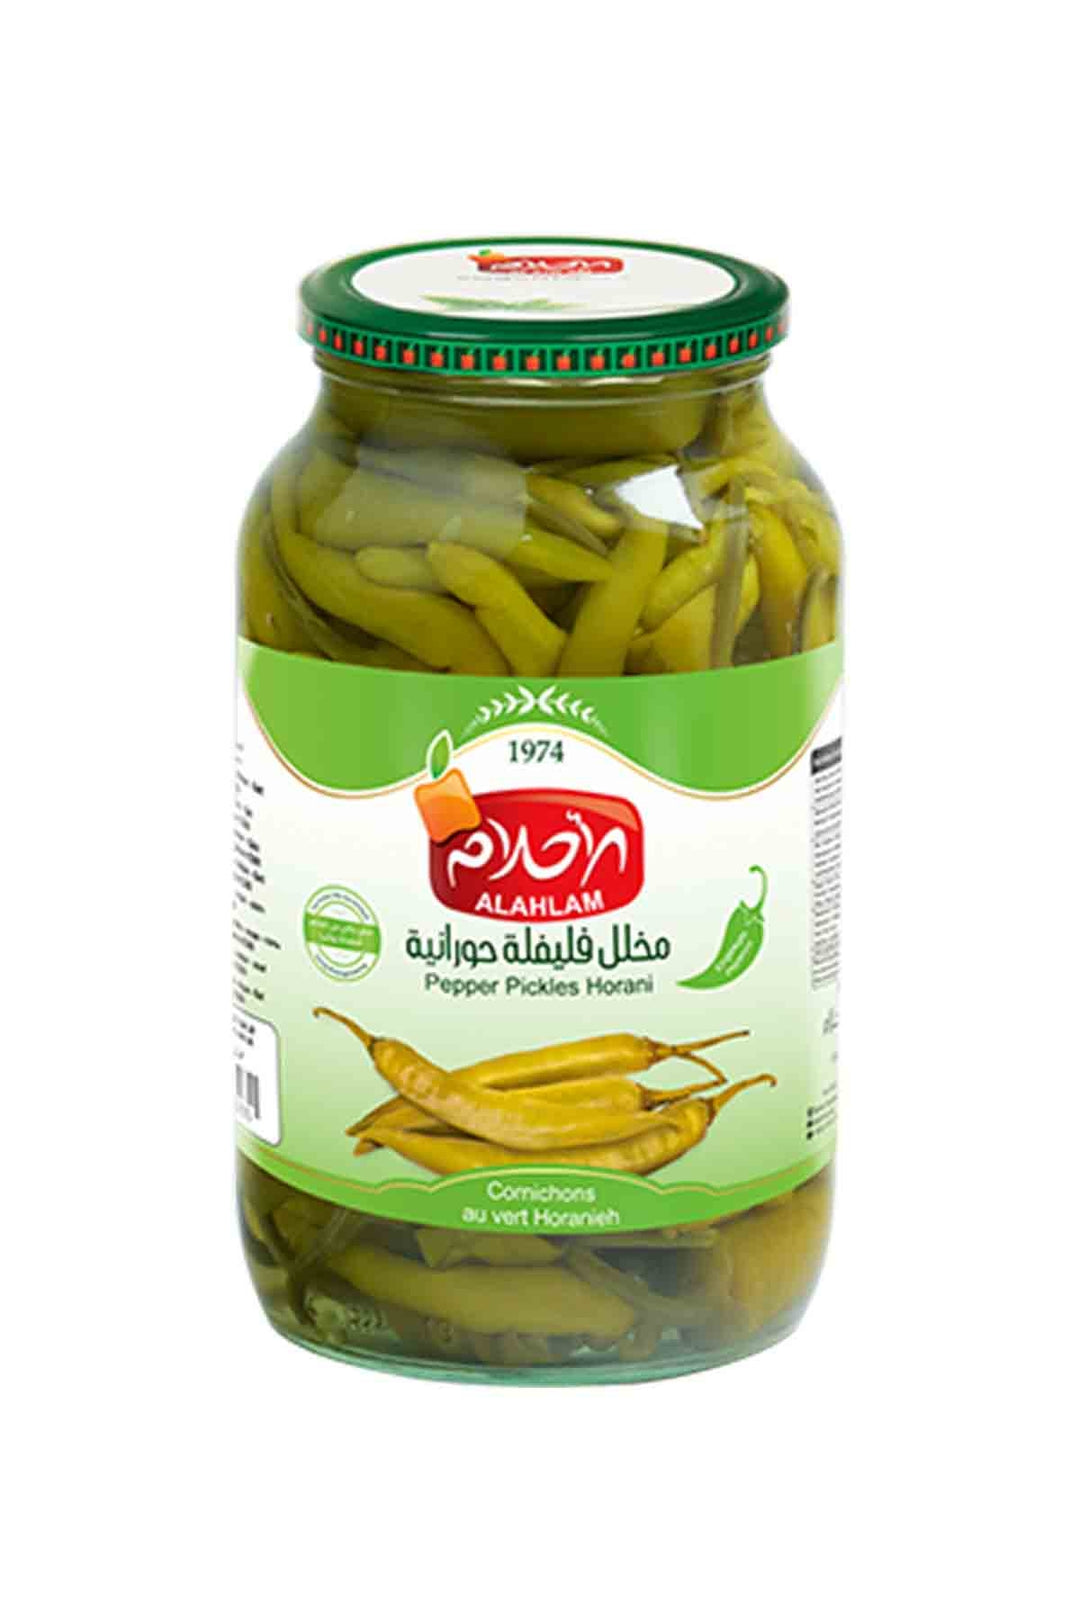 Alahlam Pickle Pepper Horani 1300ml